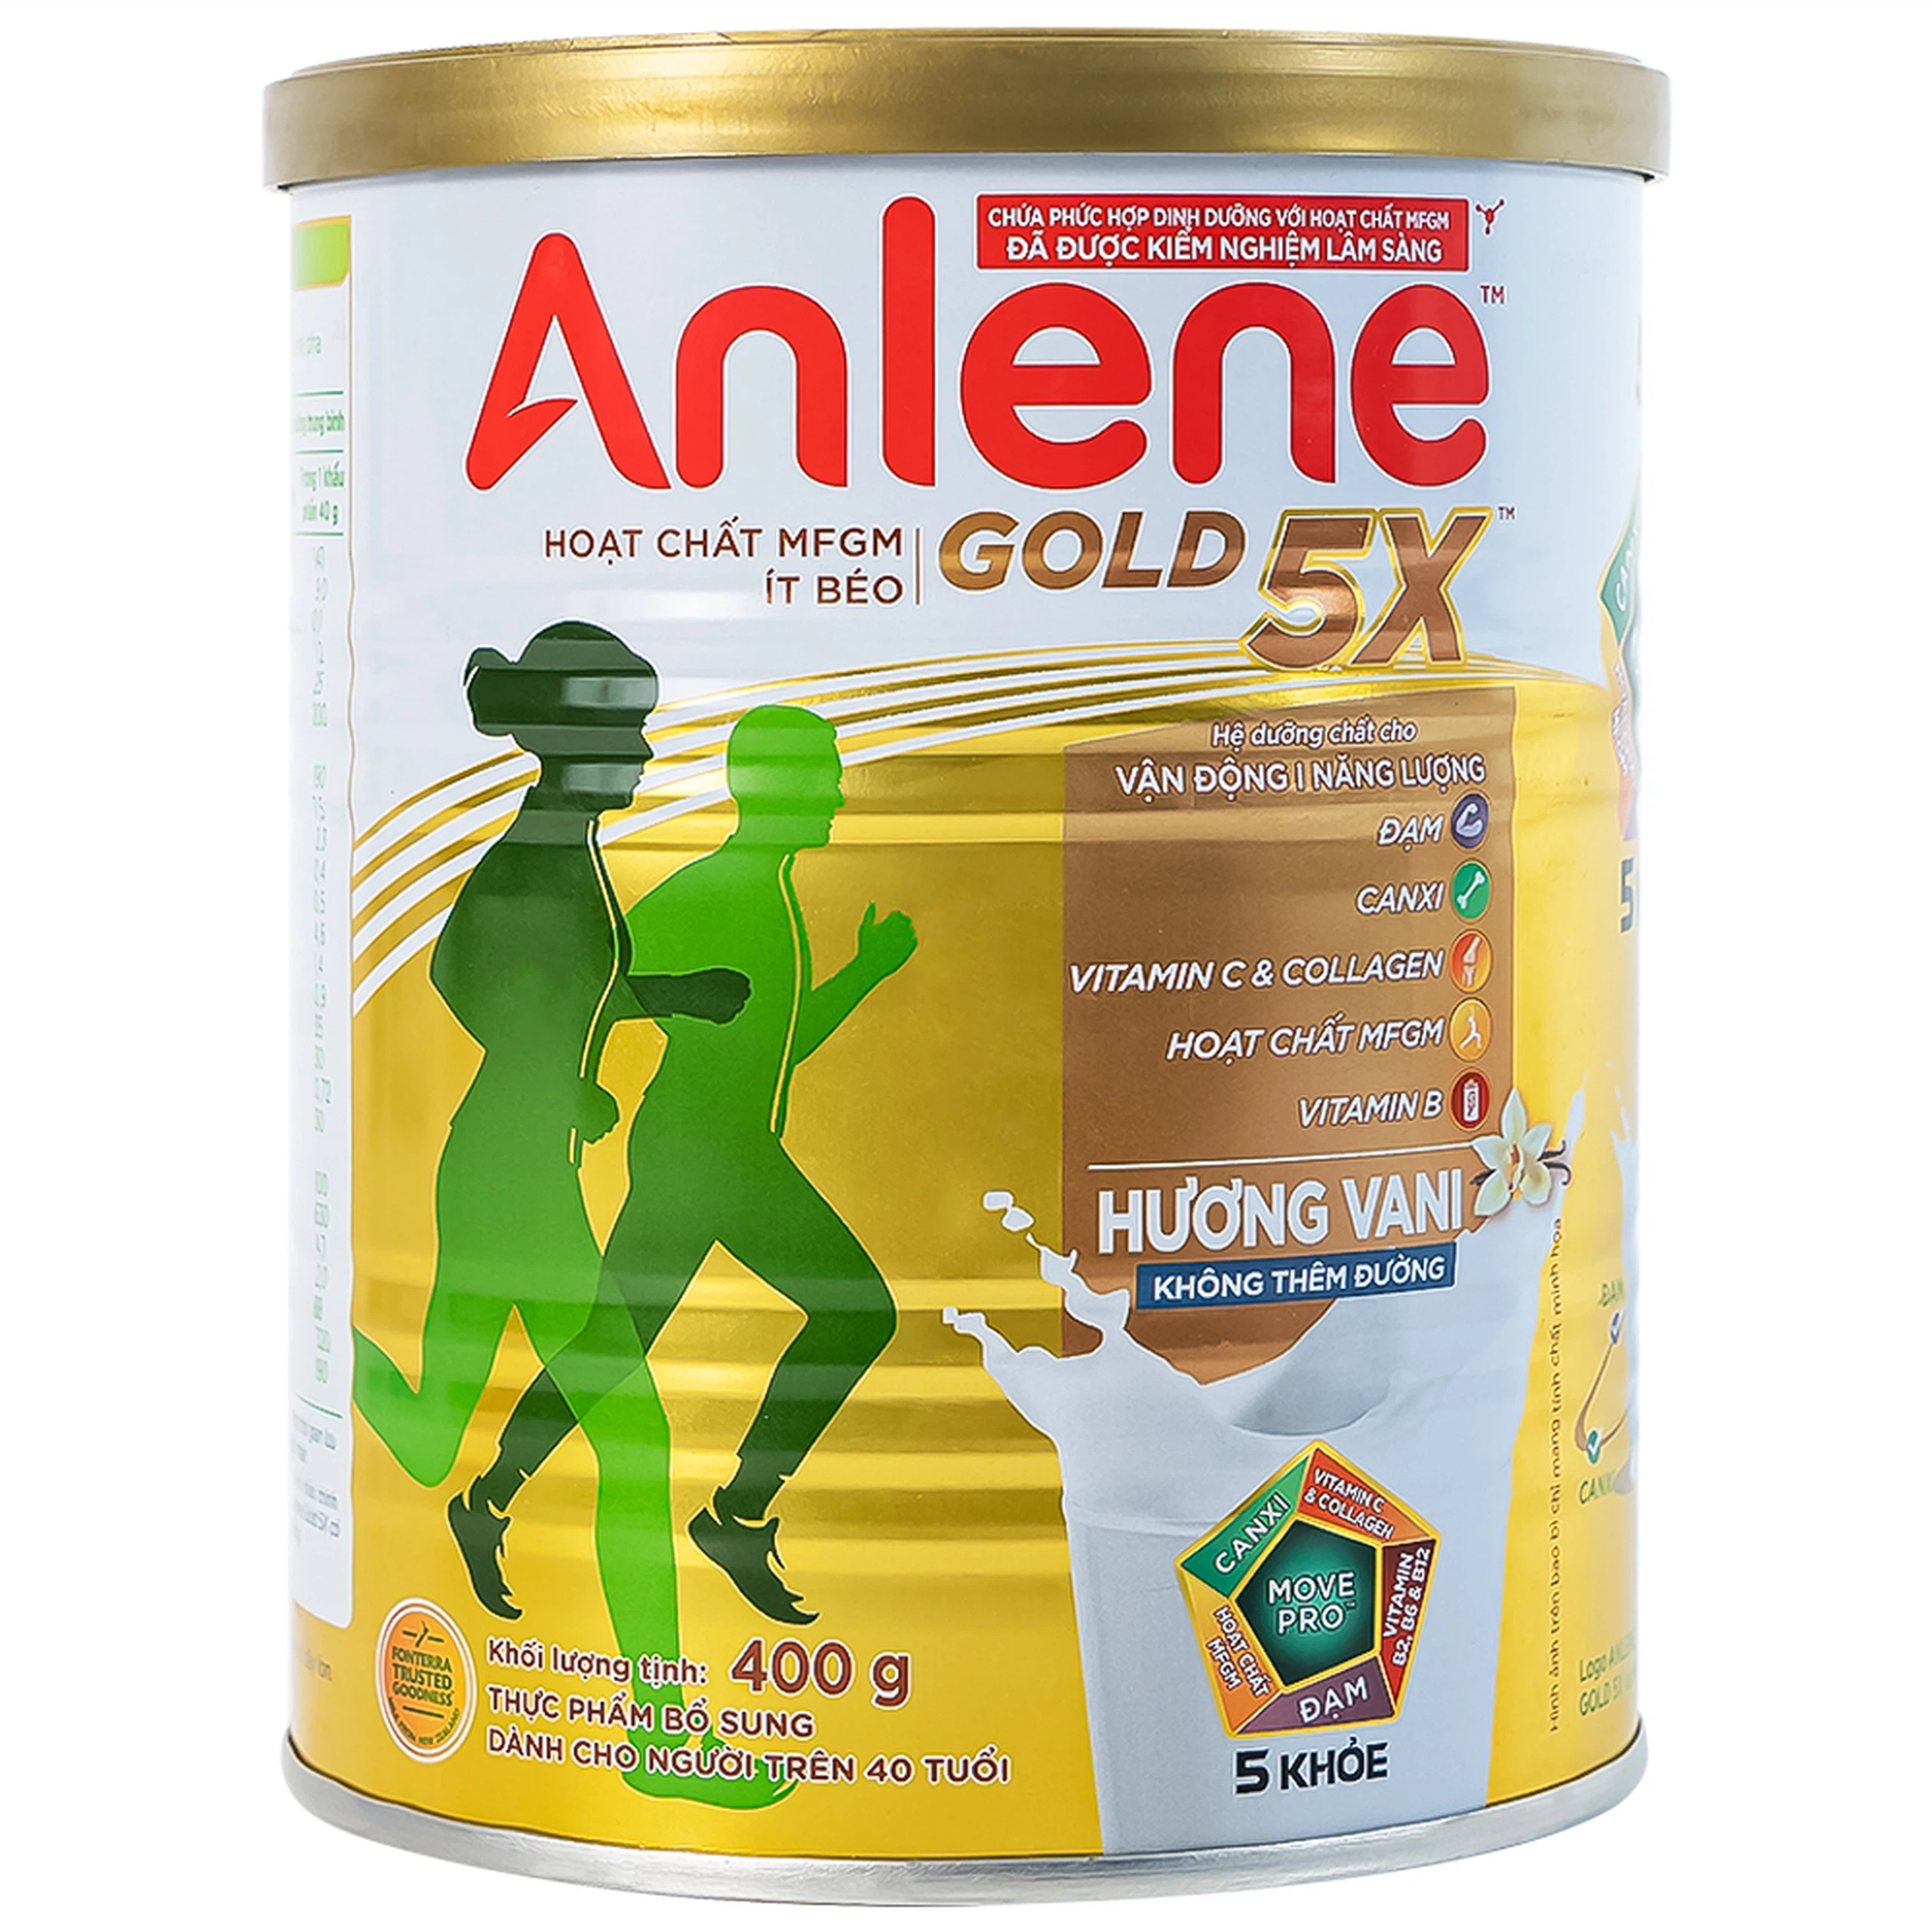 Sữa Anlene Gold 5X hương vani tăng cường sức khỏe cơ-xương-khớp dành cho người trên 40 tuổi (400g)